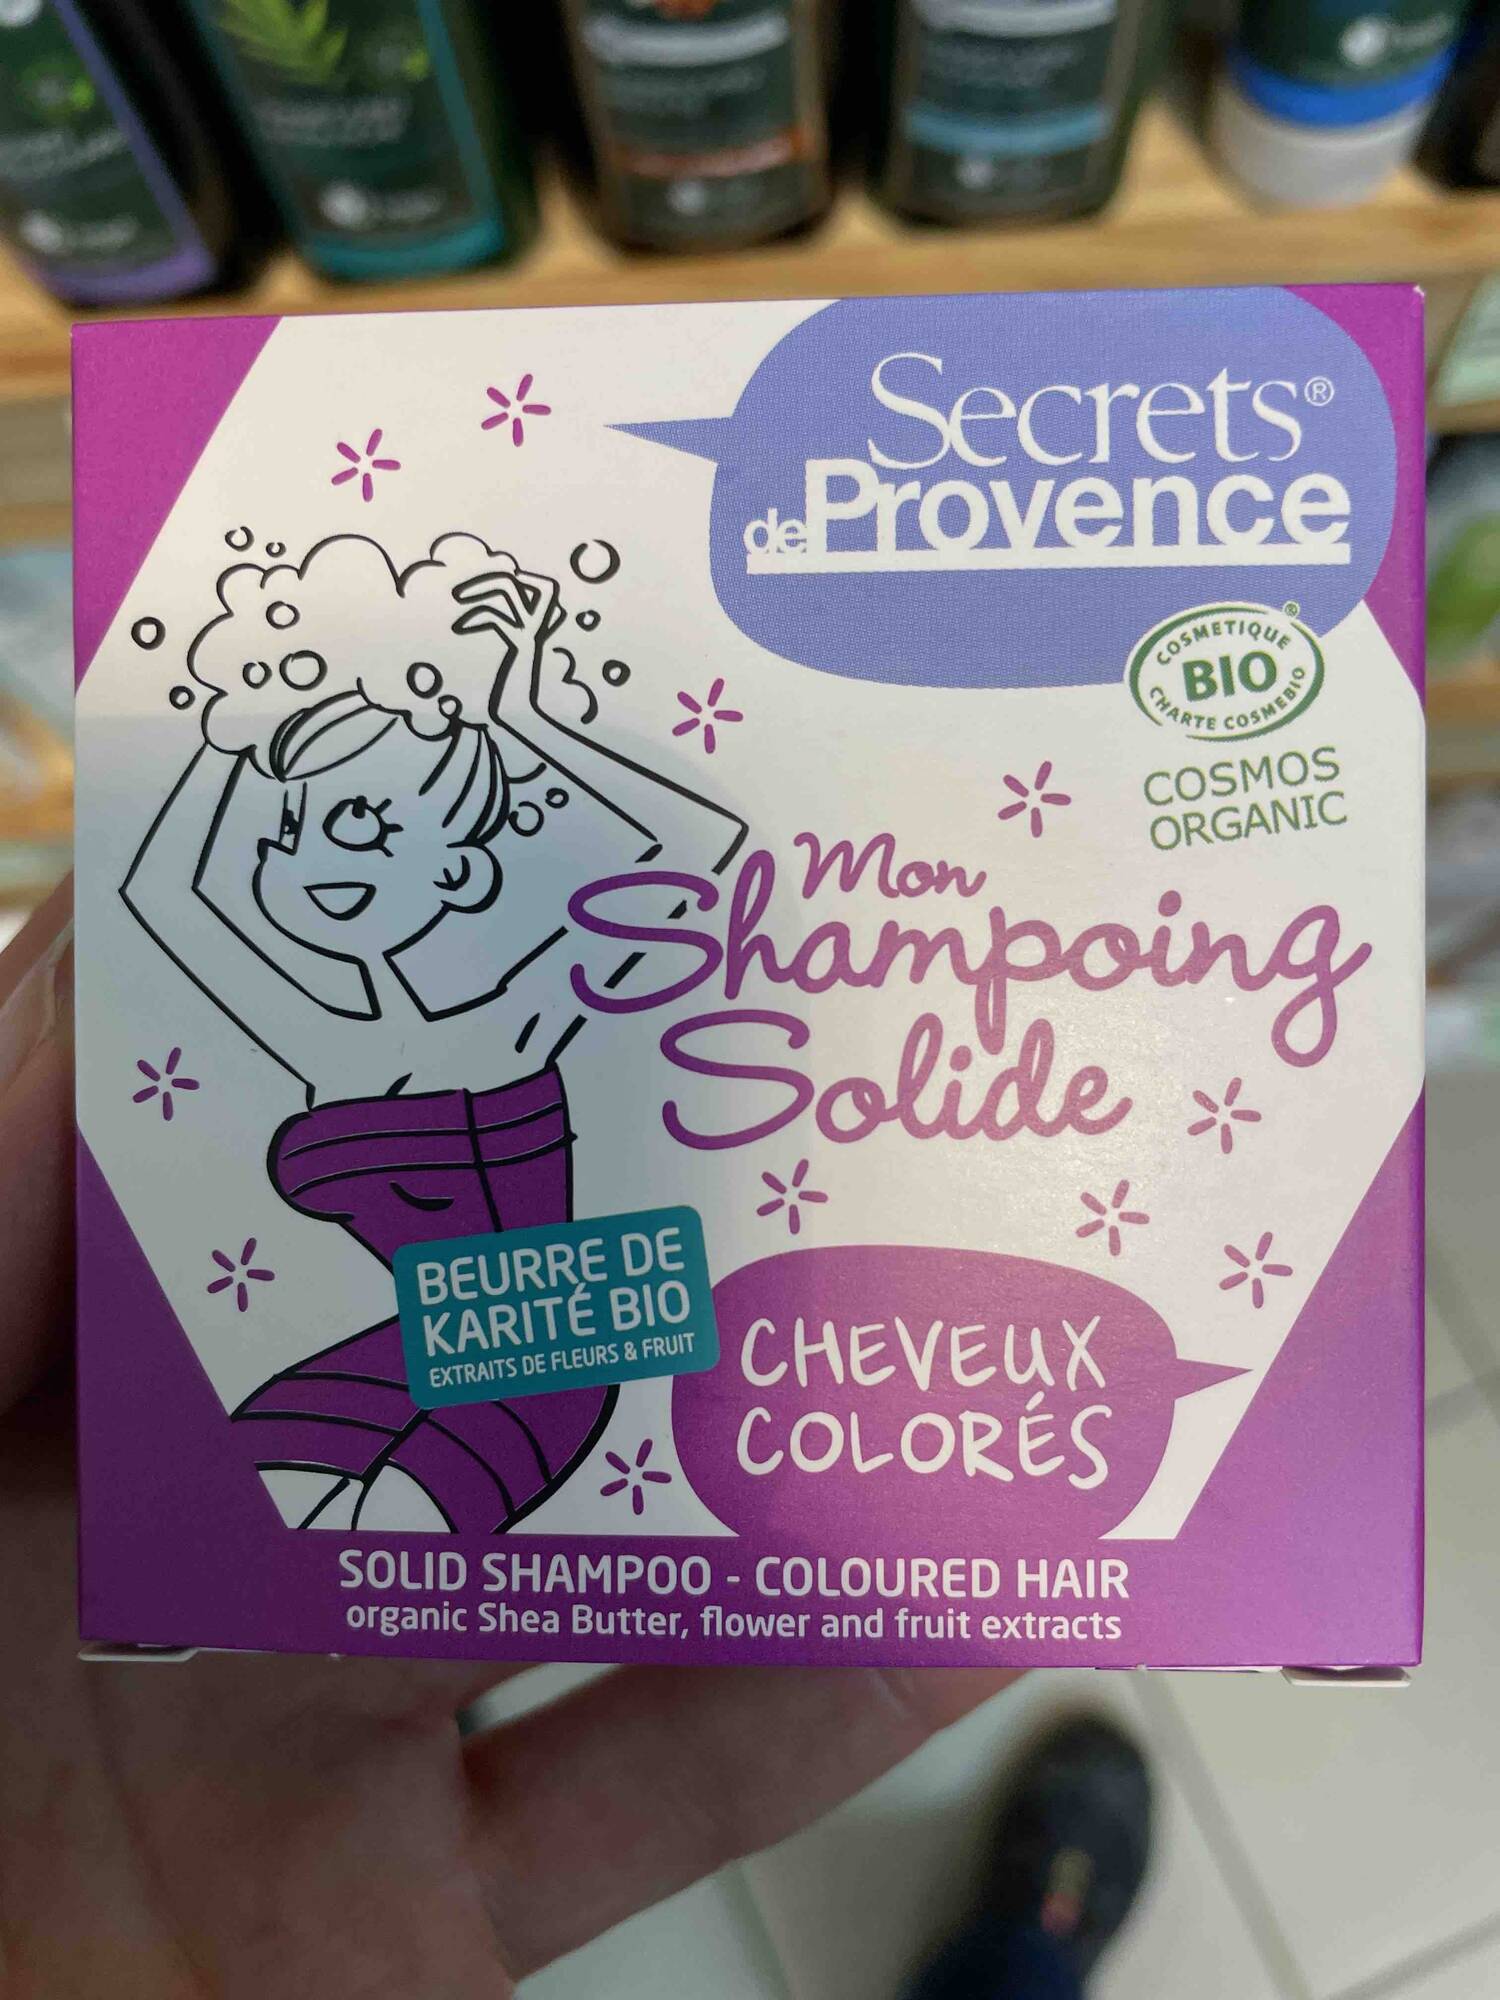 SECRETS DE PROVENCE - Beurre de karité bio - Mon shampoing solide cheveux colorés